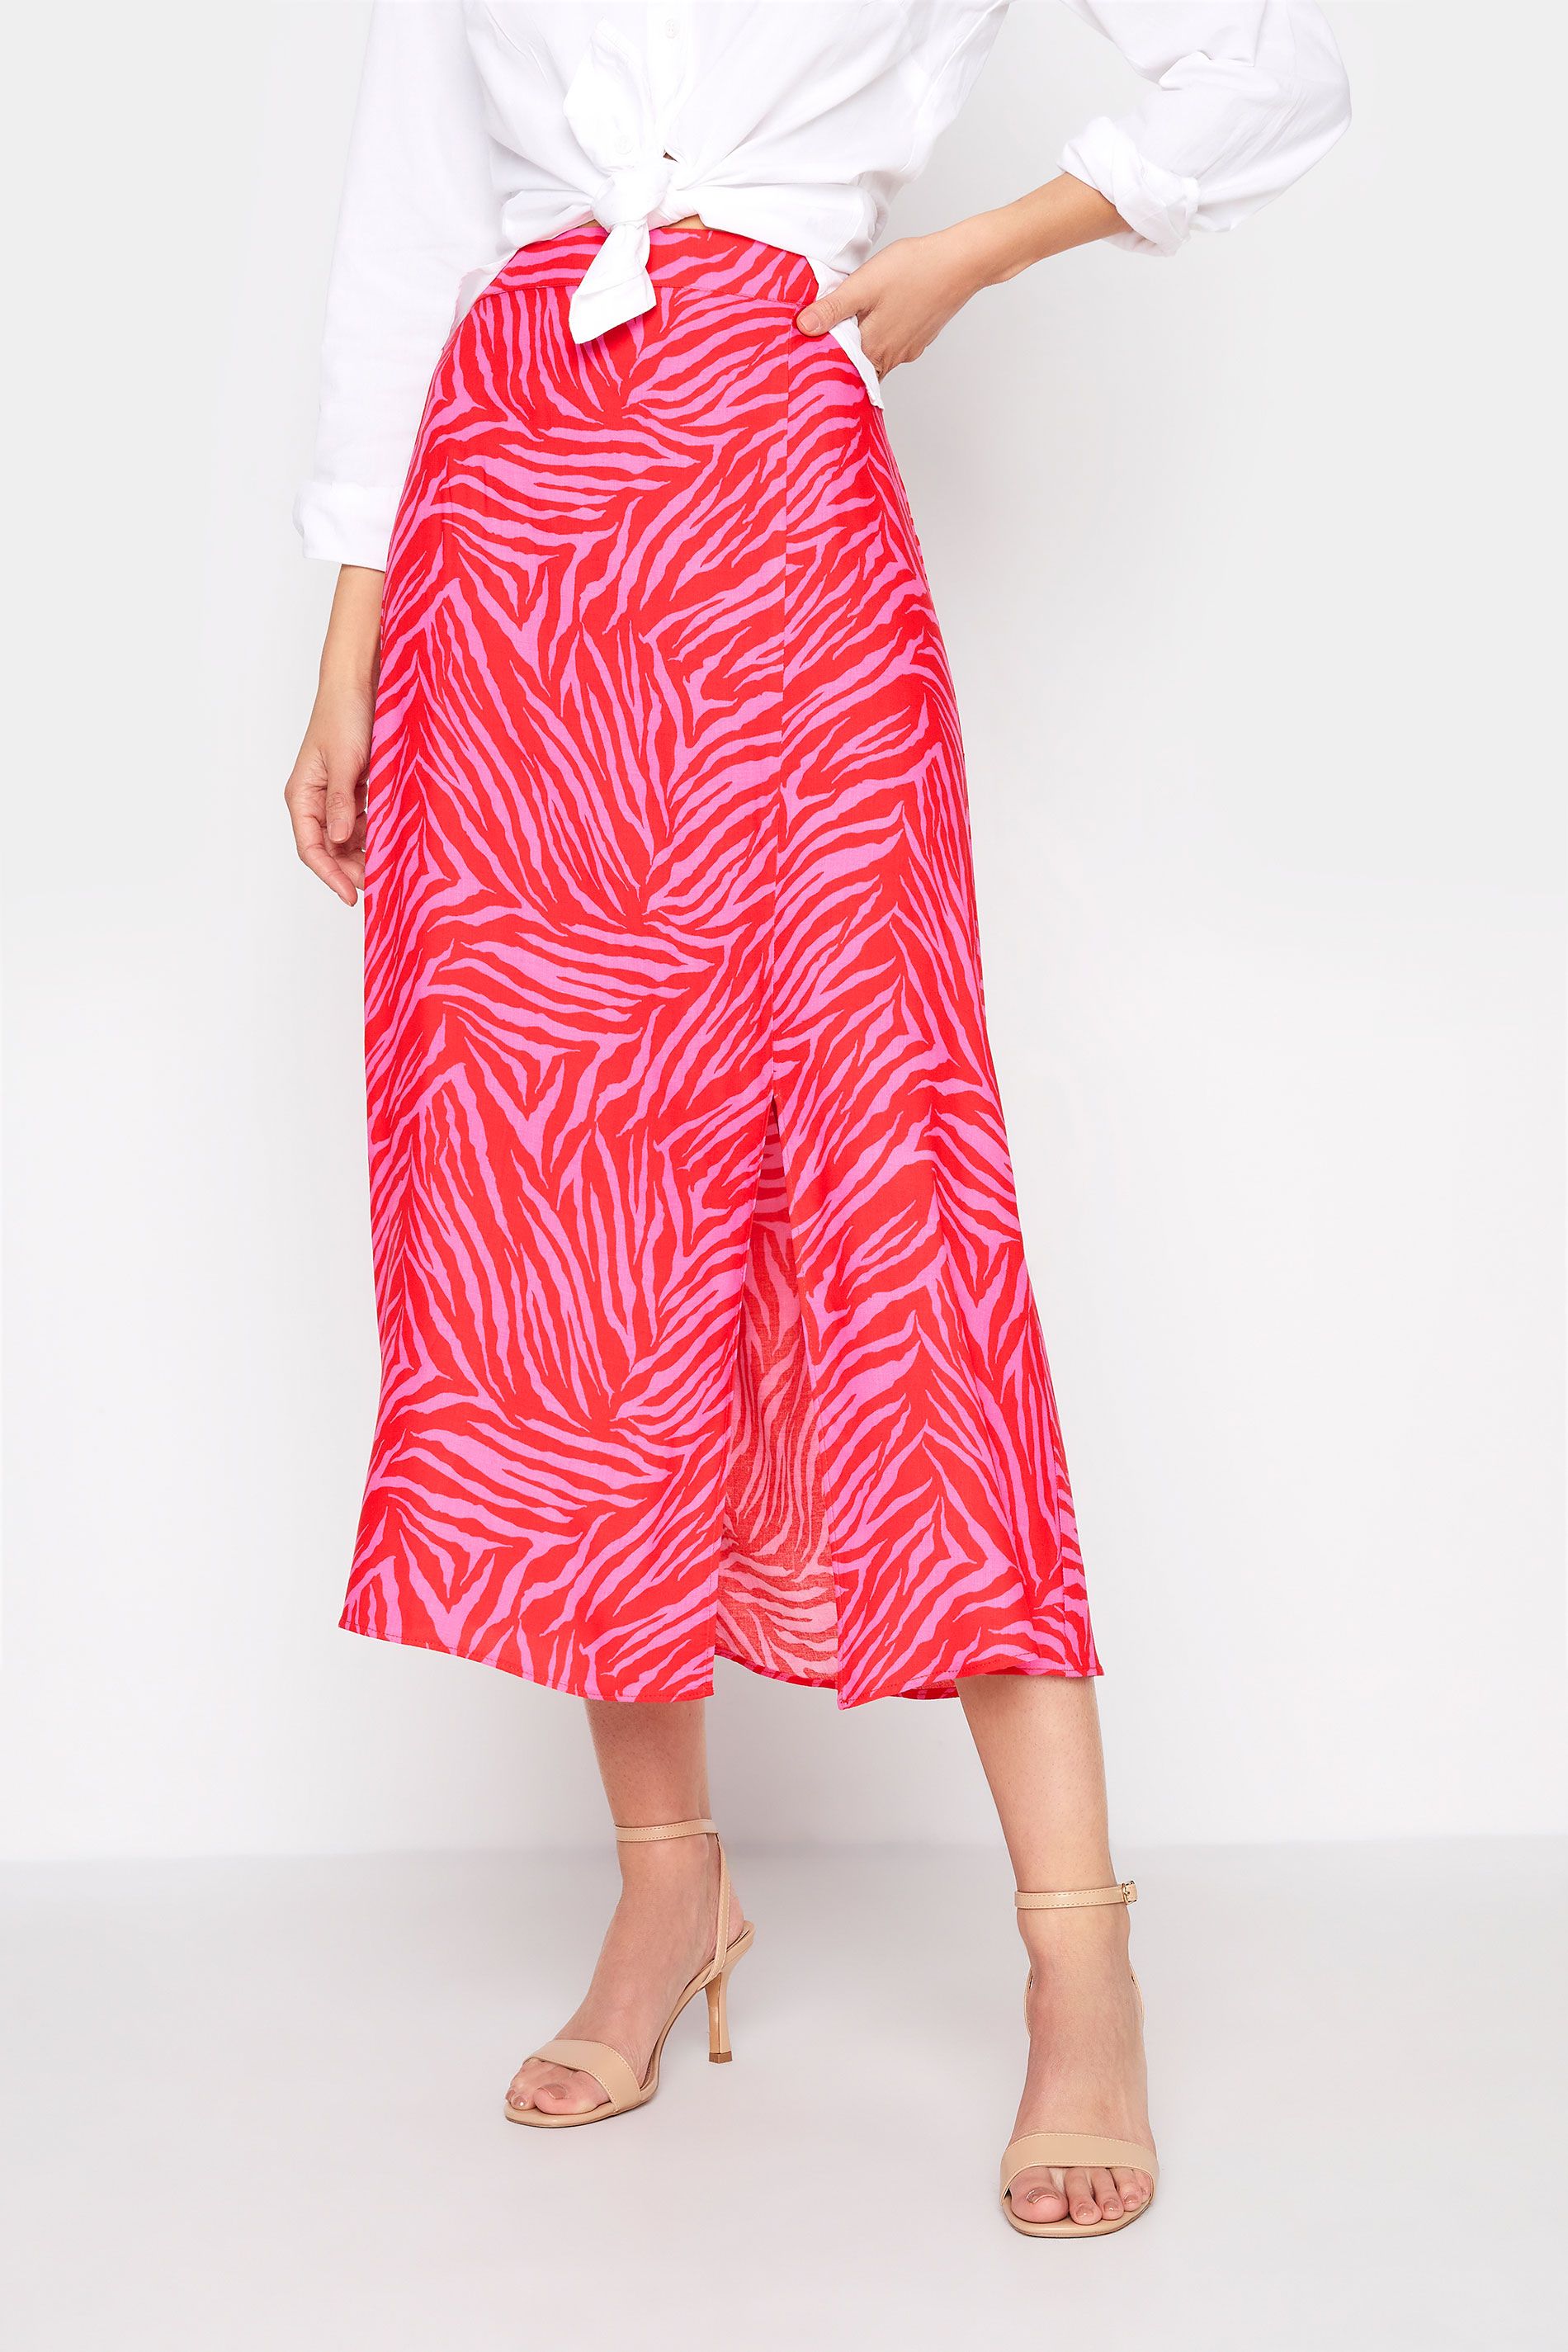 LTS Tall Pink Zebra Print Midi Skirt | Long Tall Sally